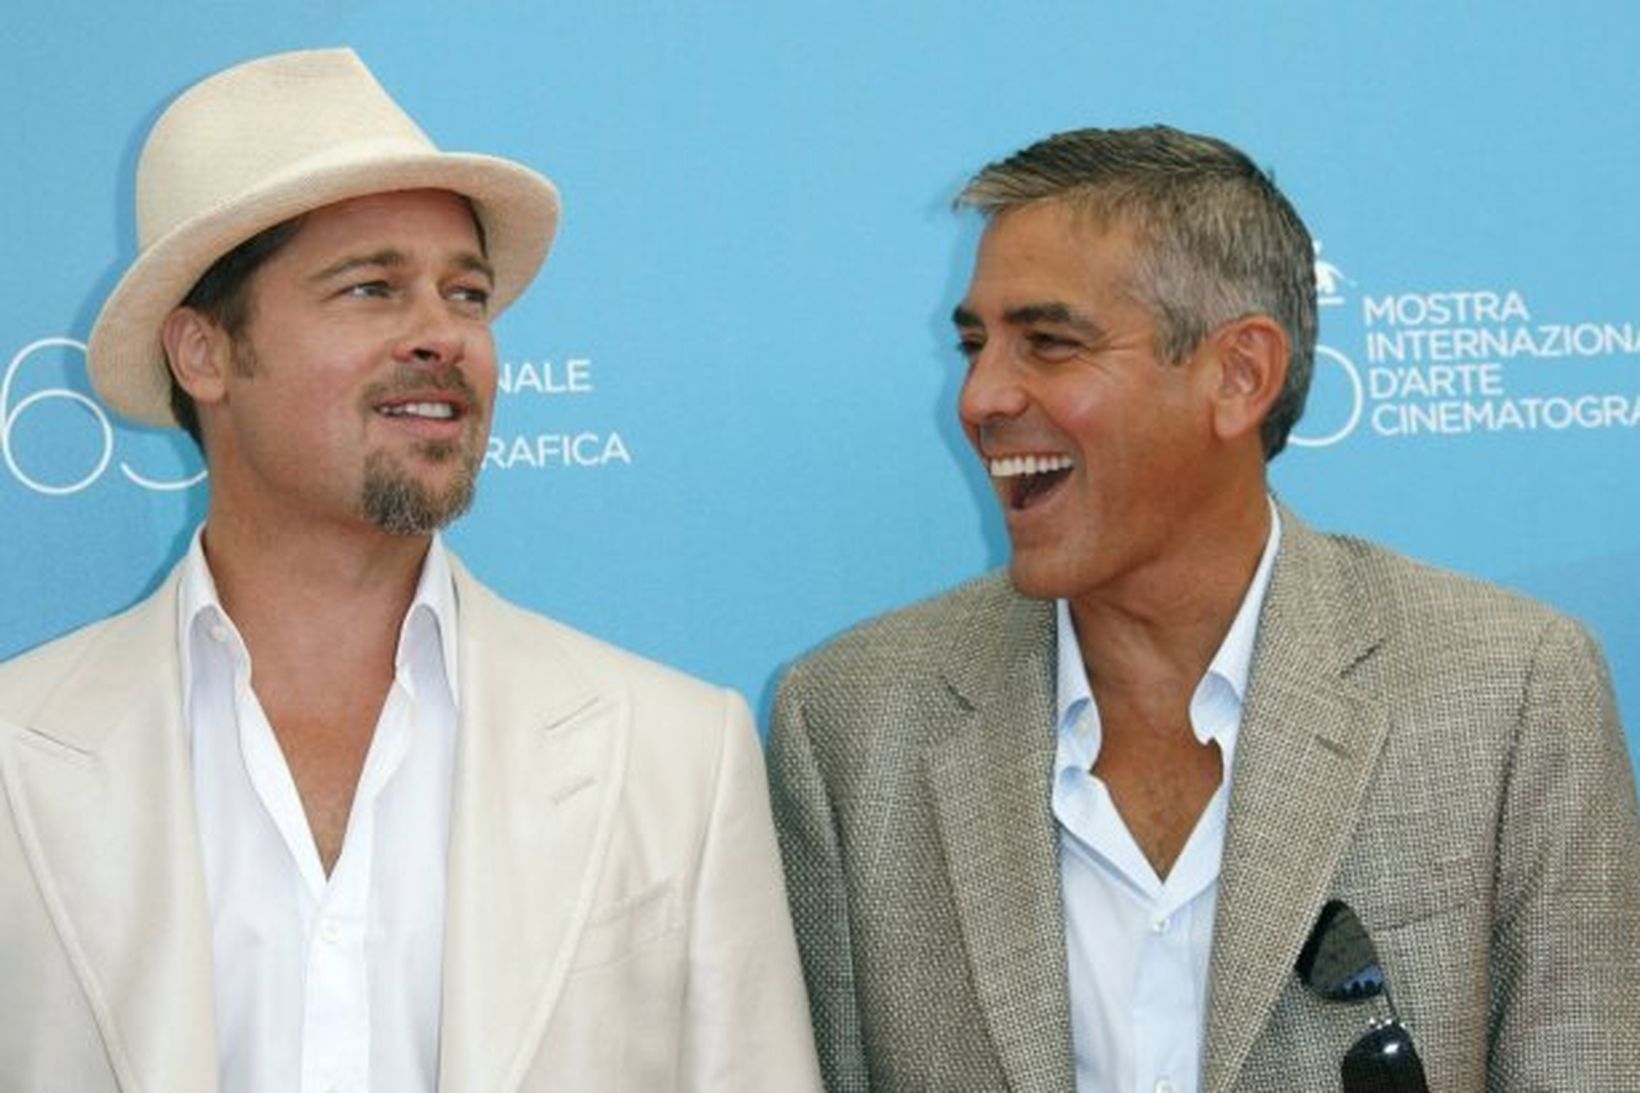 Leikararnir George Clooney og Brad Pitt þykja með myndarlegustu mönnum …